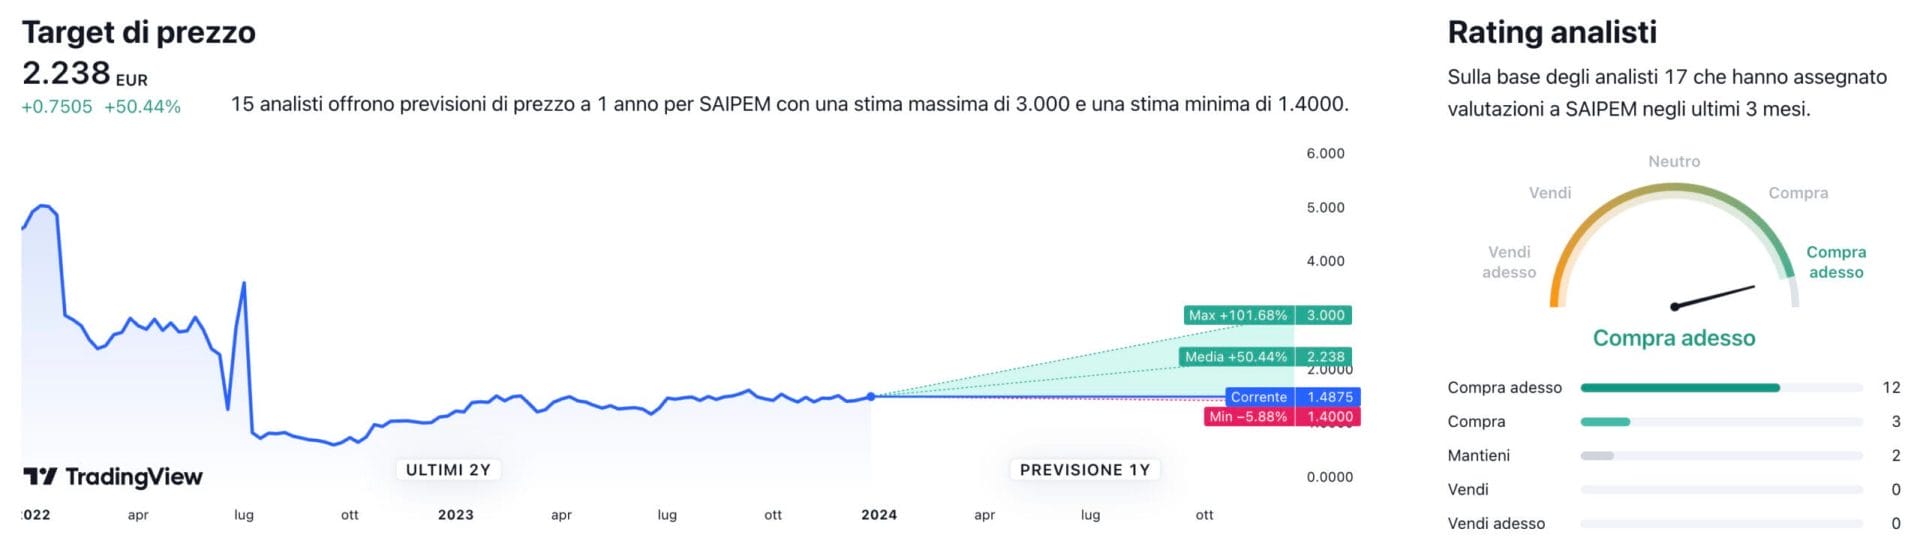 Target di prezzo a un anno e raccomandazioni degli analisti per il titolo Saipem